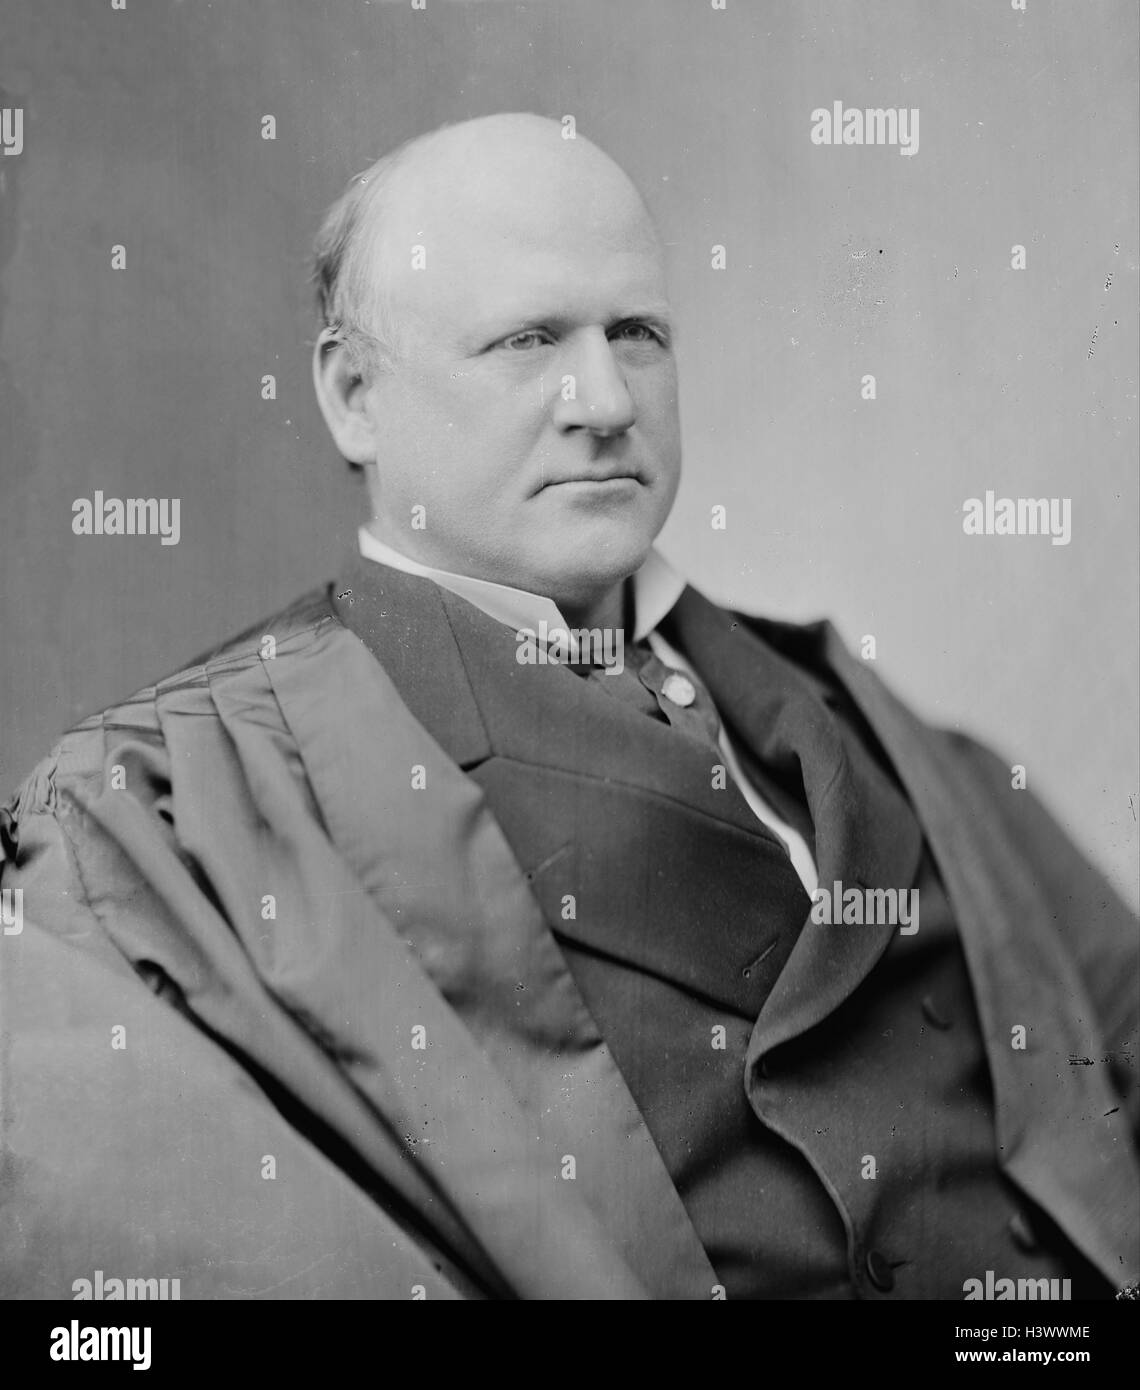 Ritratto fotografico di John Marshall Harlan(1833-1911) un avvocato americano, politico e di associare la giustizia degli Stati Uniti d'America. Datata del XIX secolo Foto Stock